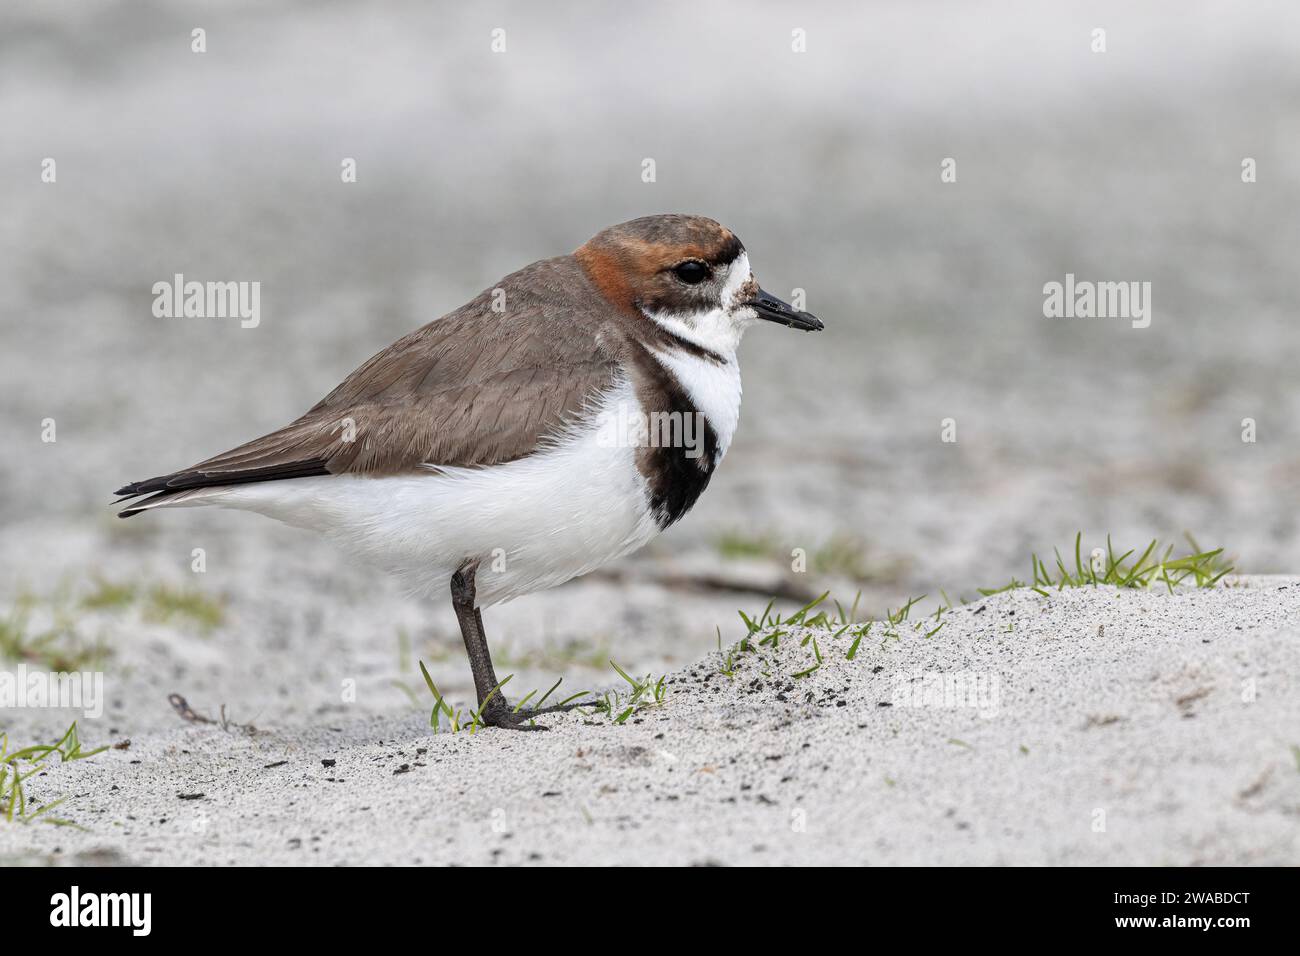 Deux Plover bagués, Charadrius falklandicus, oiseau adulte sur une plage de sable, Sea lion Island, Malouines Islands novembre Banque D'Images